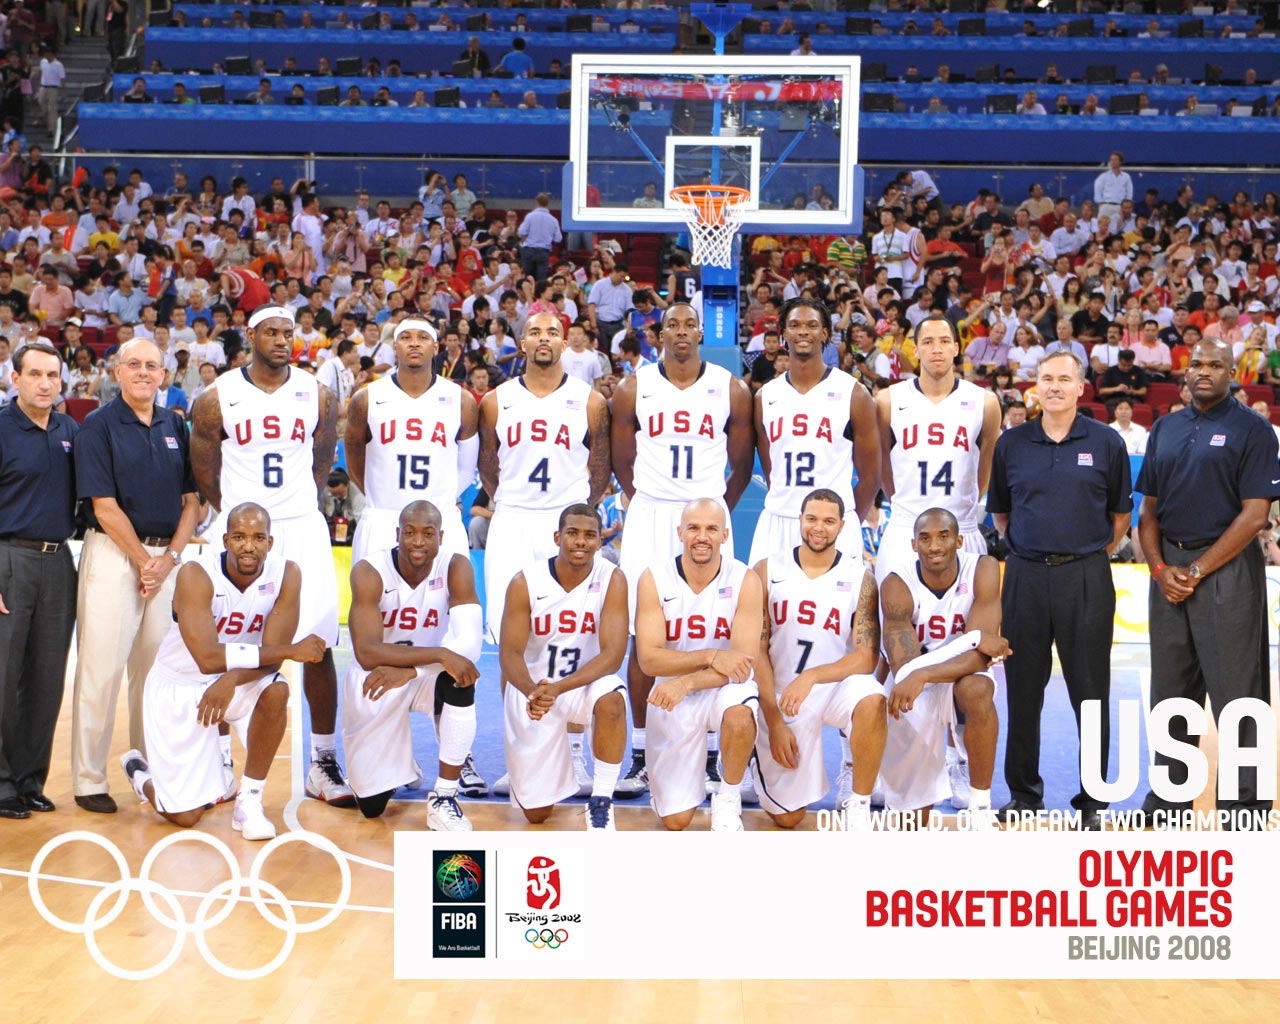 USA Basketball Olympic Team 2008 Wallpaper